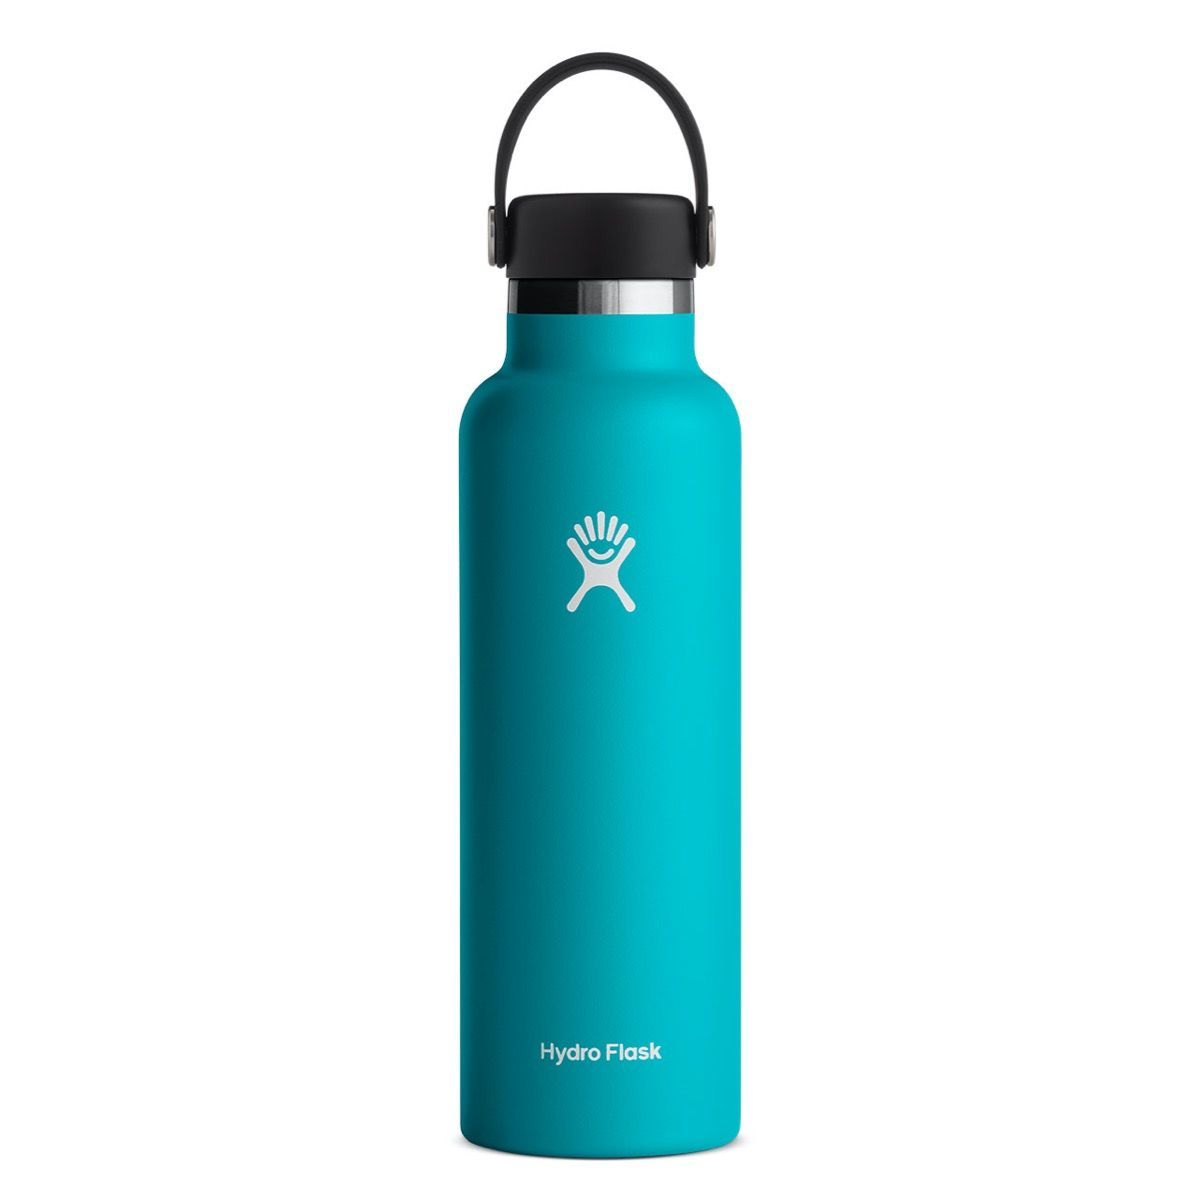 Hydro Flask - Standard Mouth bottle 0.71l/24oz - BPA Free Stainless Steel - Weekendbee - sustainable sportswear